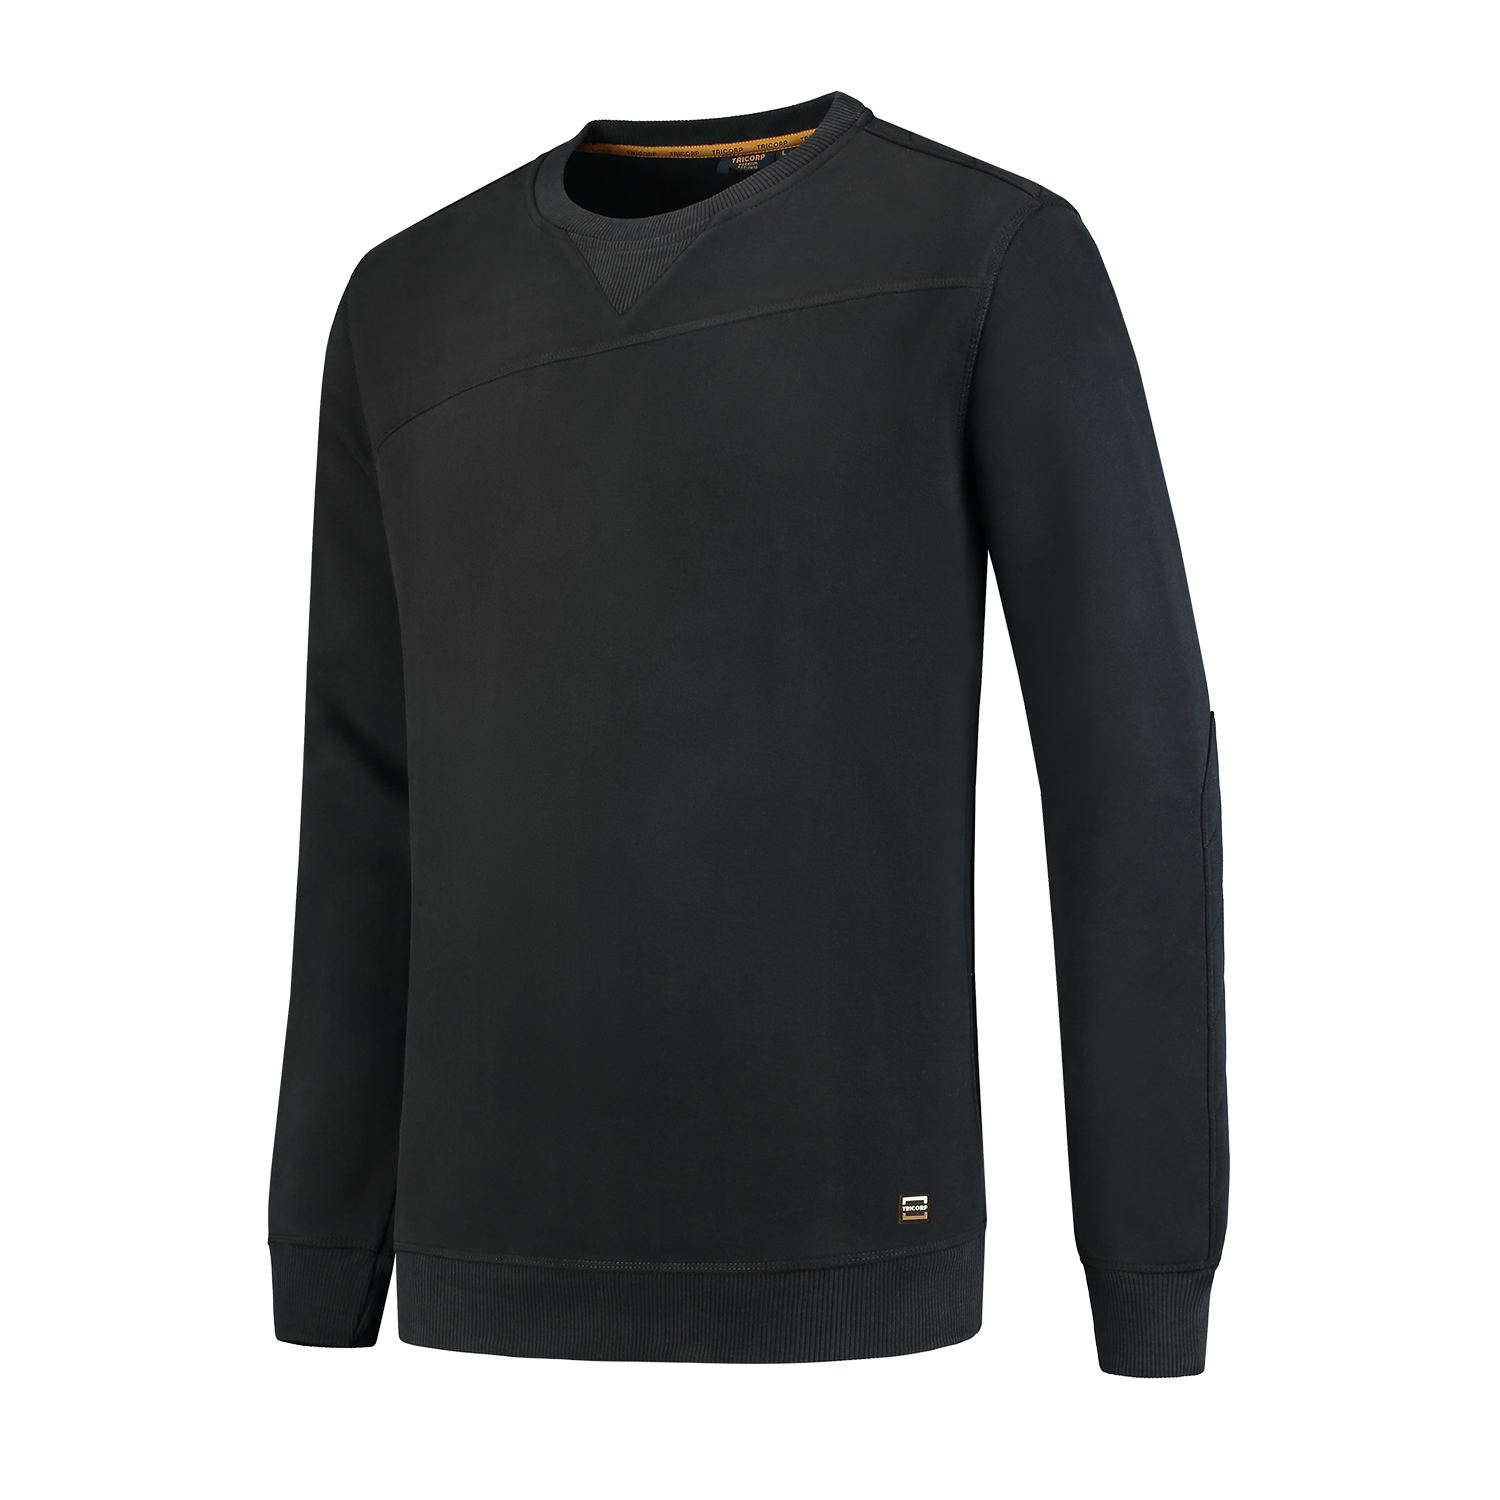 Sweater Premium 304005